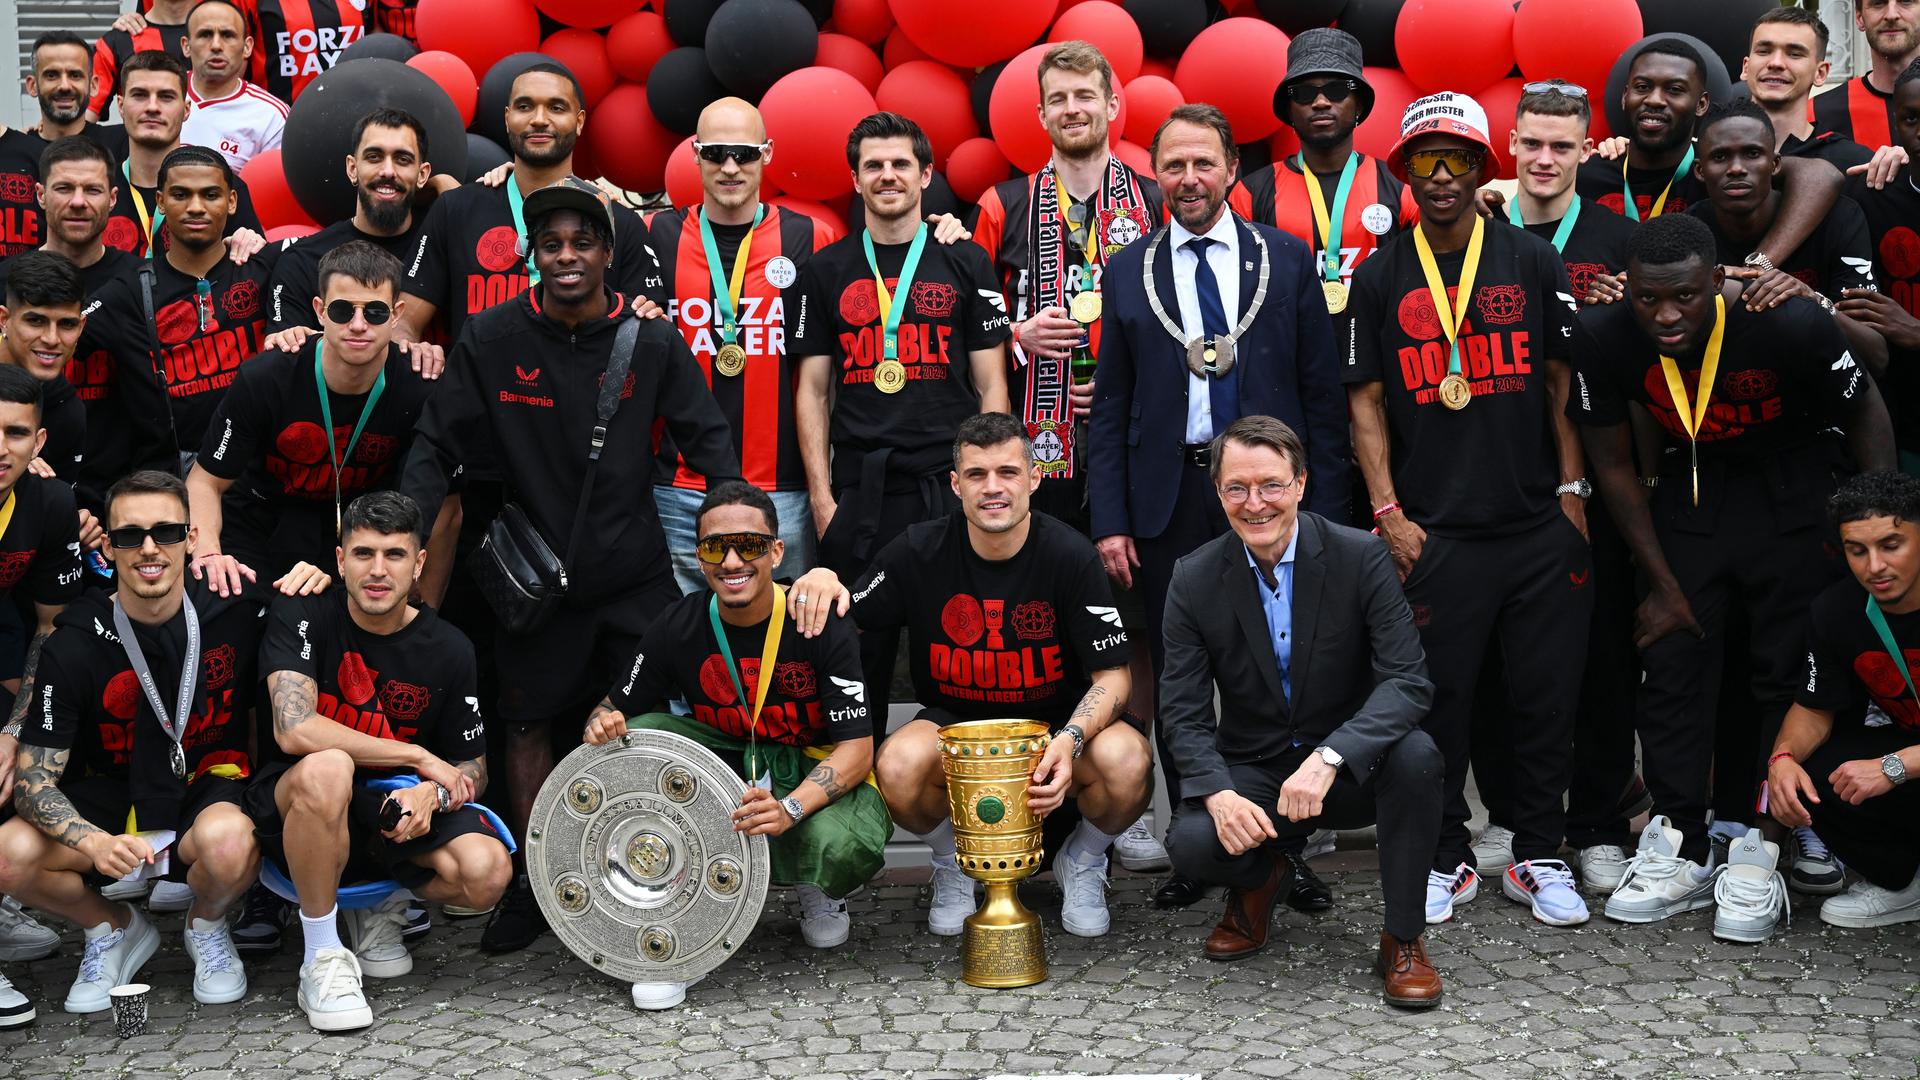 Das Foto zeigt die Mannschaft von Bayer Leverkusen mit der Meister-Schale und dem DFB-Pokal.